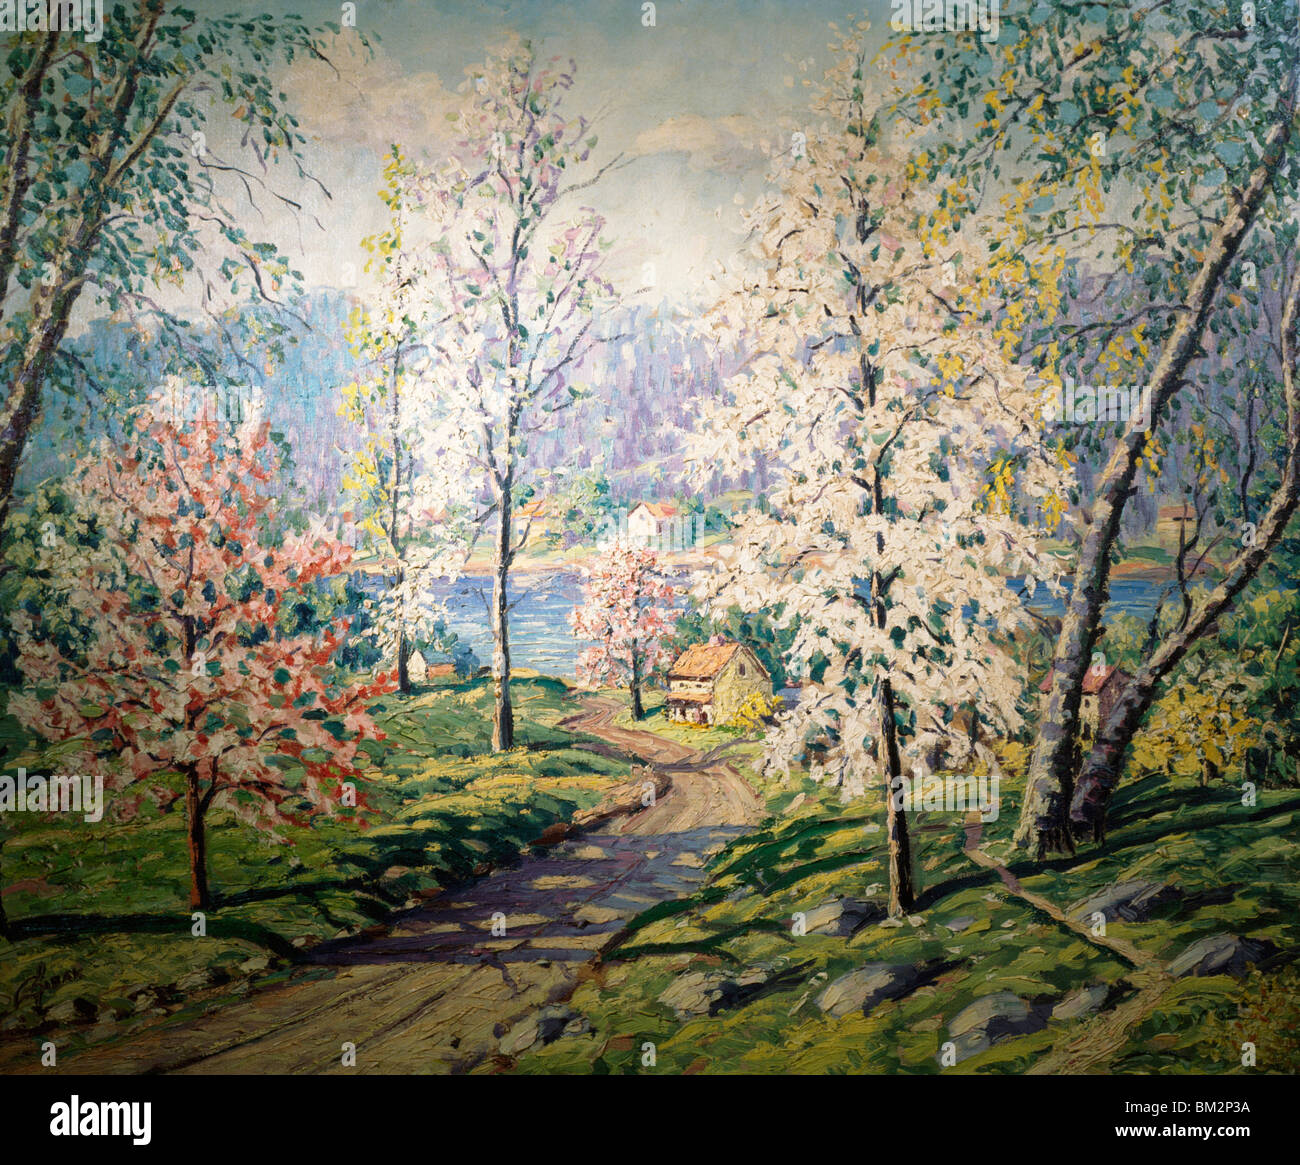 Le printemps le long de la Maine par Carol Sirak, huile sur toile, (1906-1976), Etats-Unis, New York, Philadelphie, David David Gallery Banque D'Images